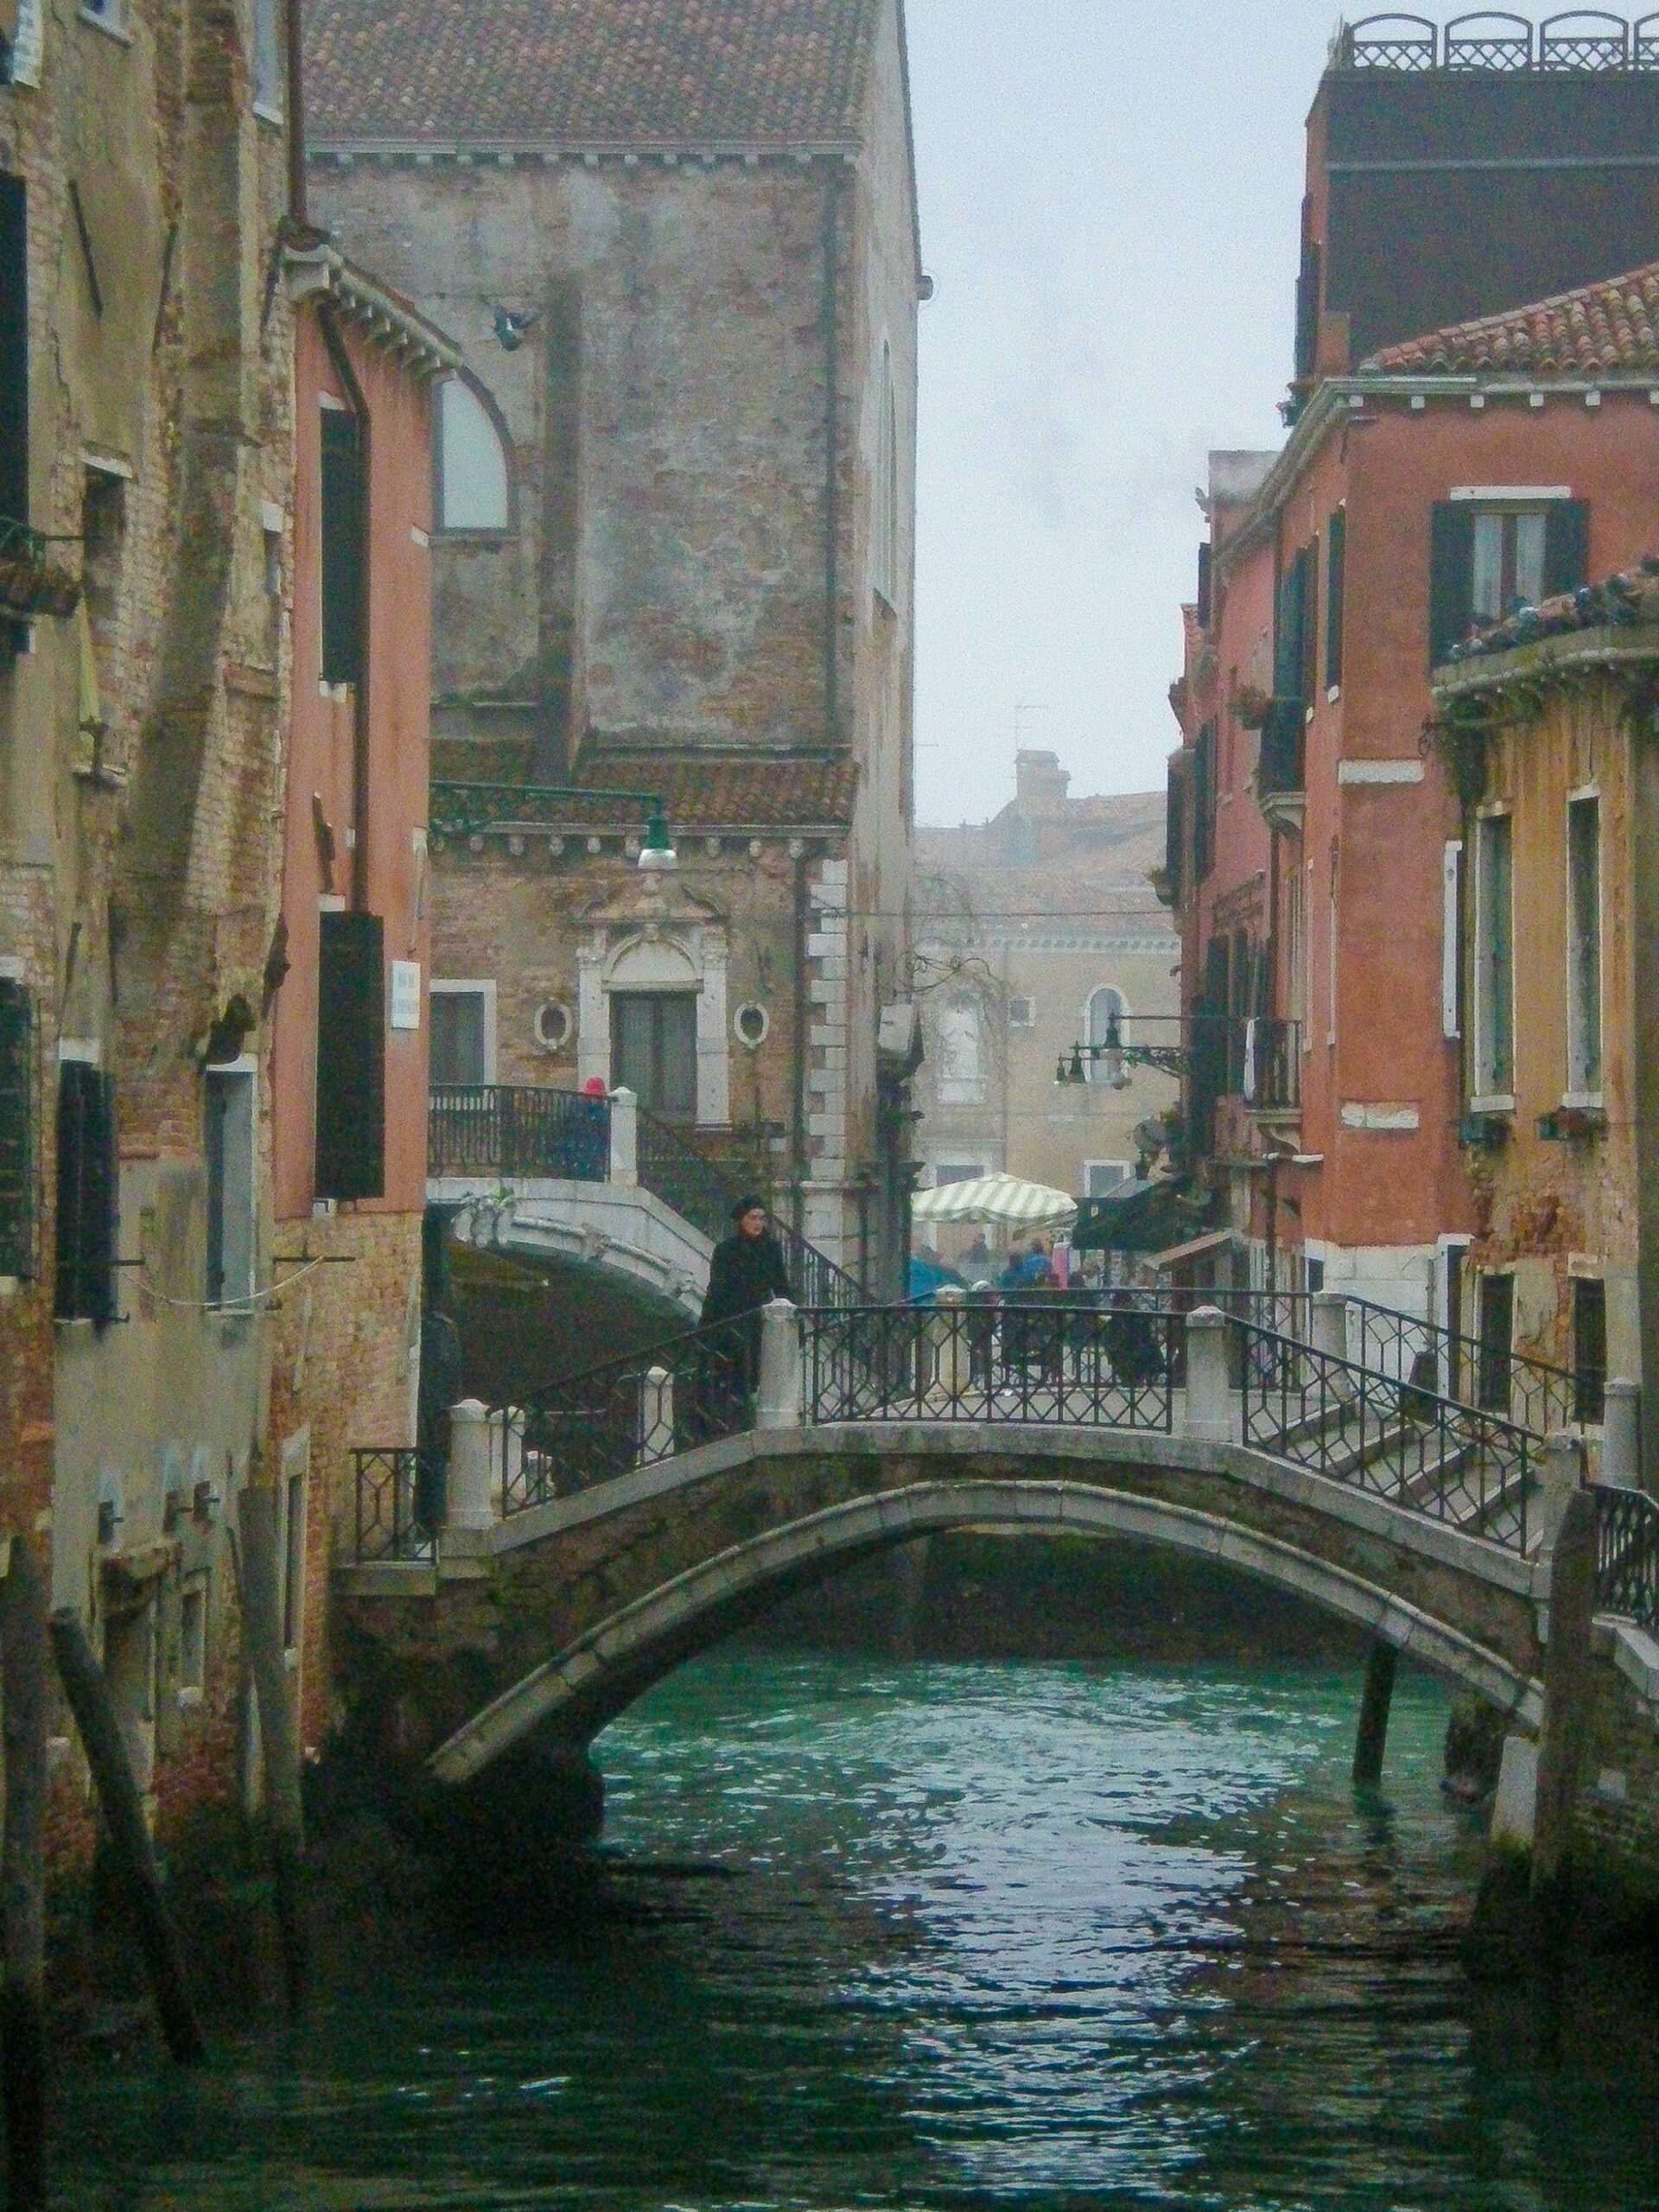 Ruelle et canal dans Venise l'hiver en Italie